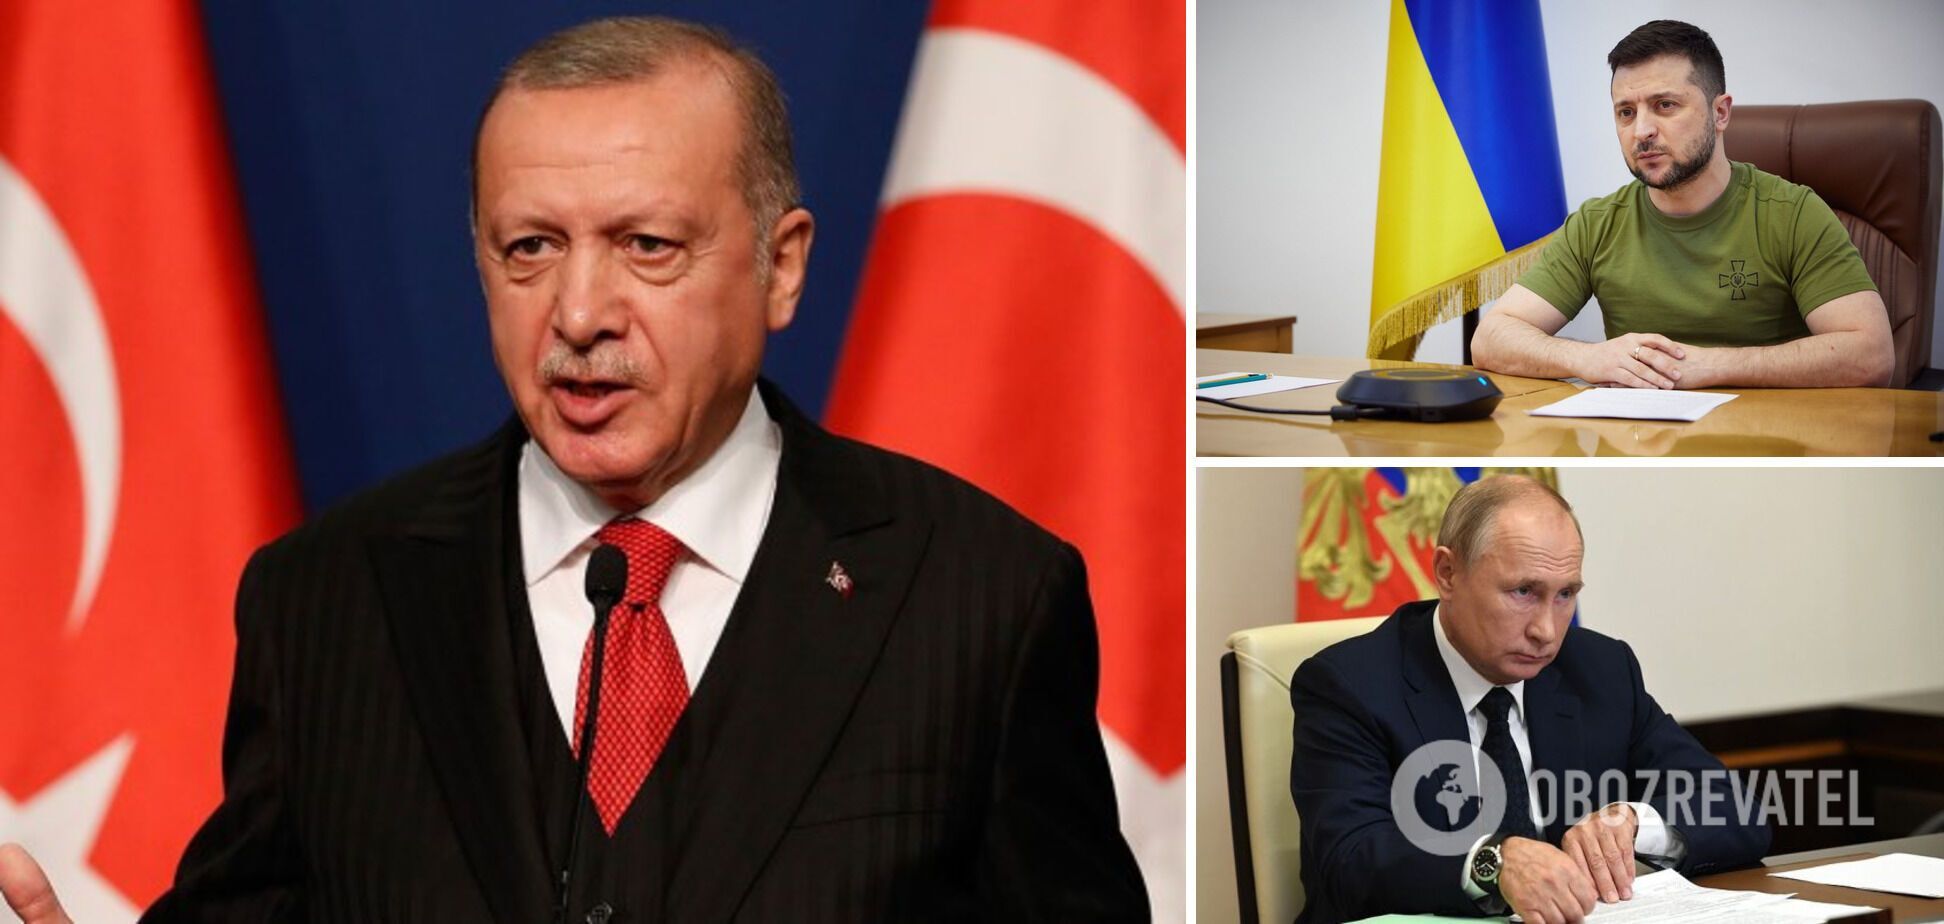 Эрдоган обвинил западных политиков в неправильном отношении к Путину